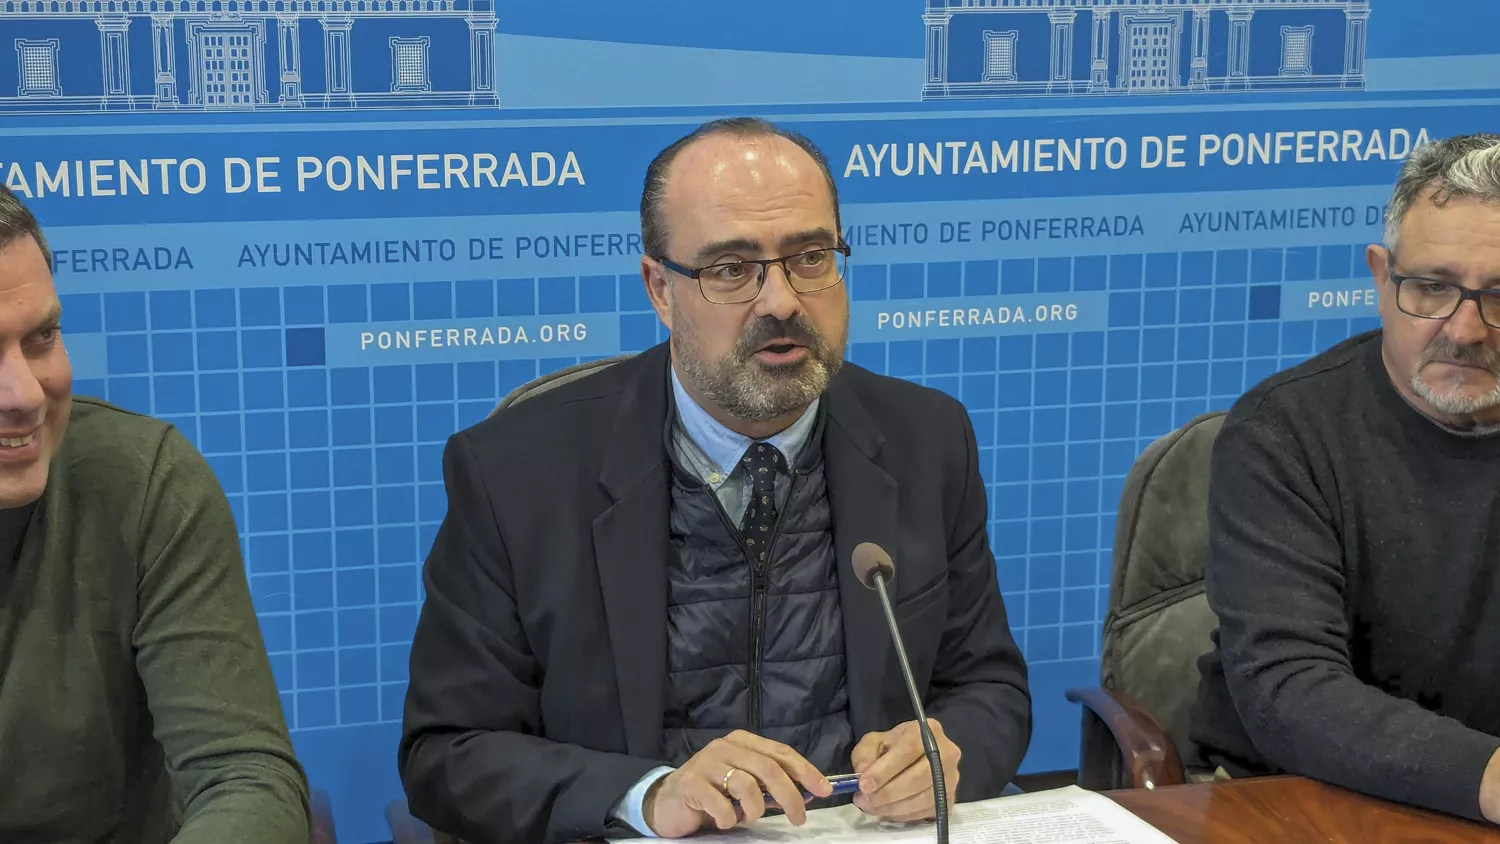 El alcalde de Ponferrada, Marco Morala, anuncia la autorización a la DGT a usar, de forma gratuita, un aula y una pista para la realización de los exámenes de conducir